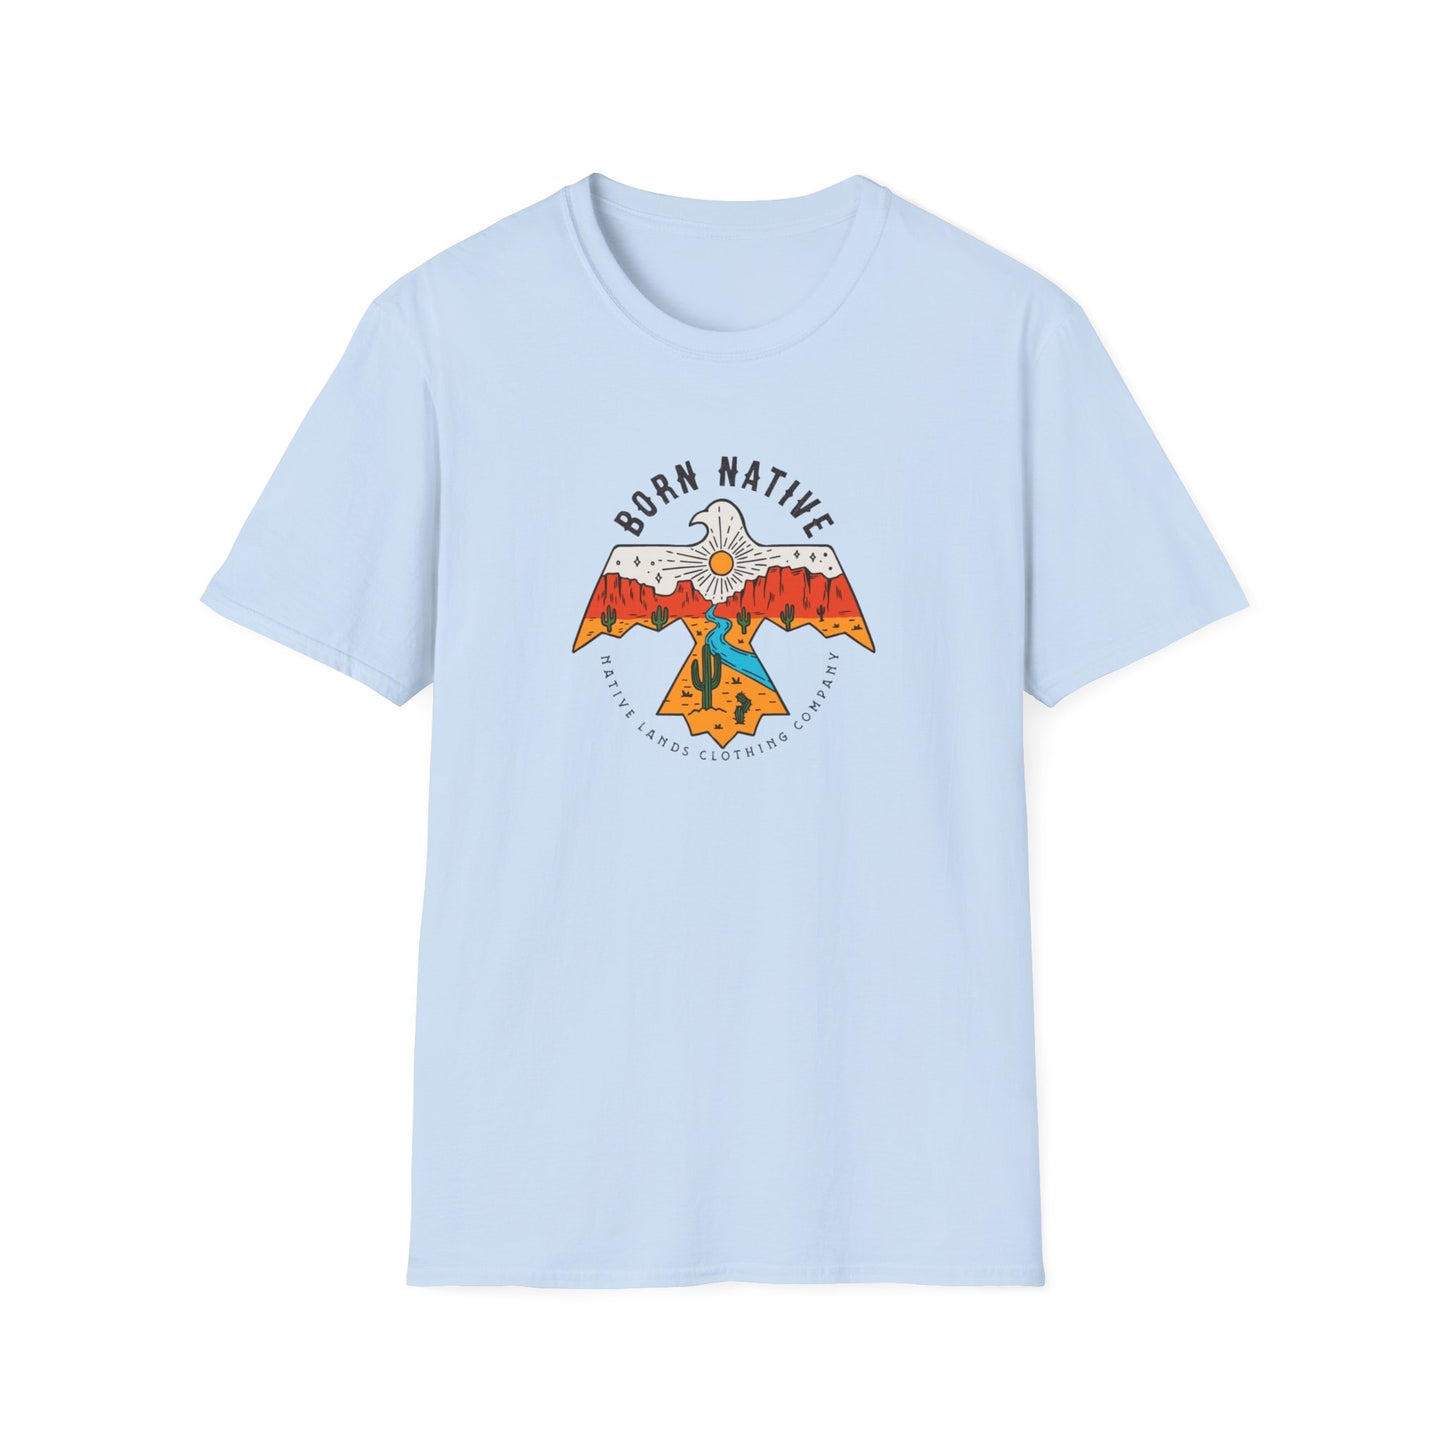 Born Native Thunderbird Shirt Cotton Native American